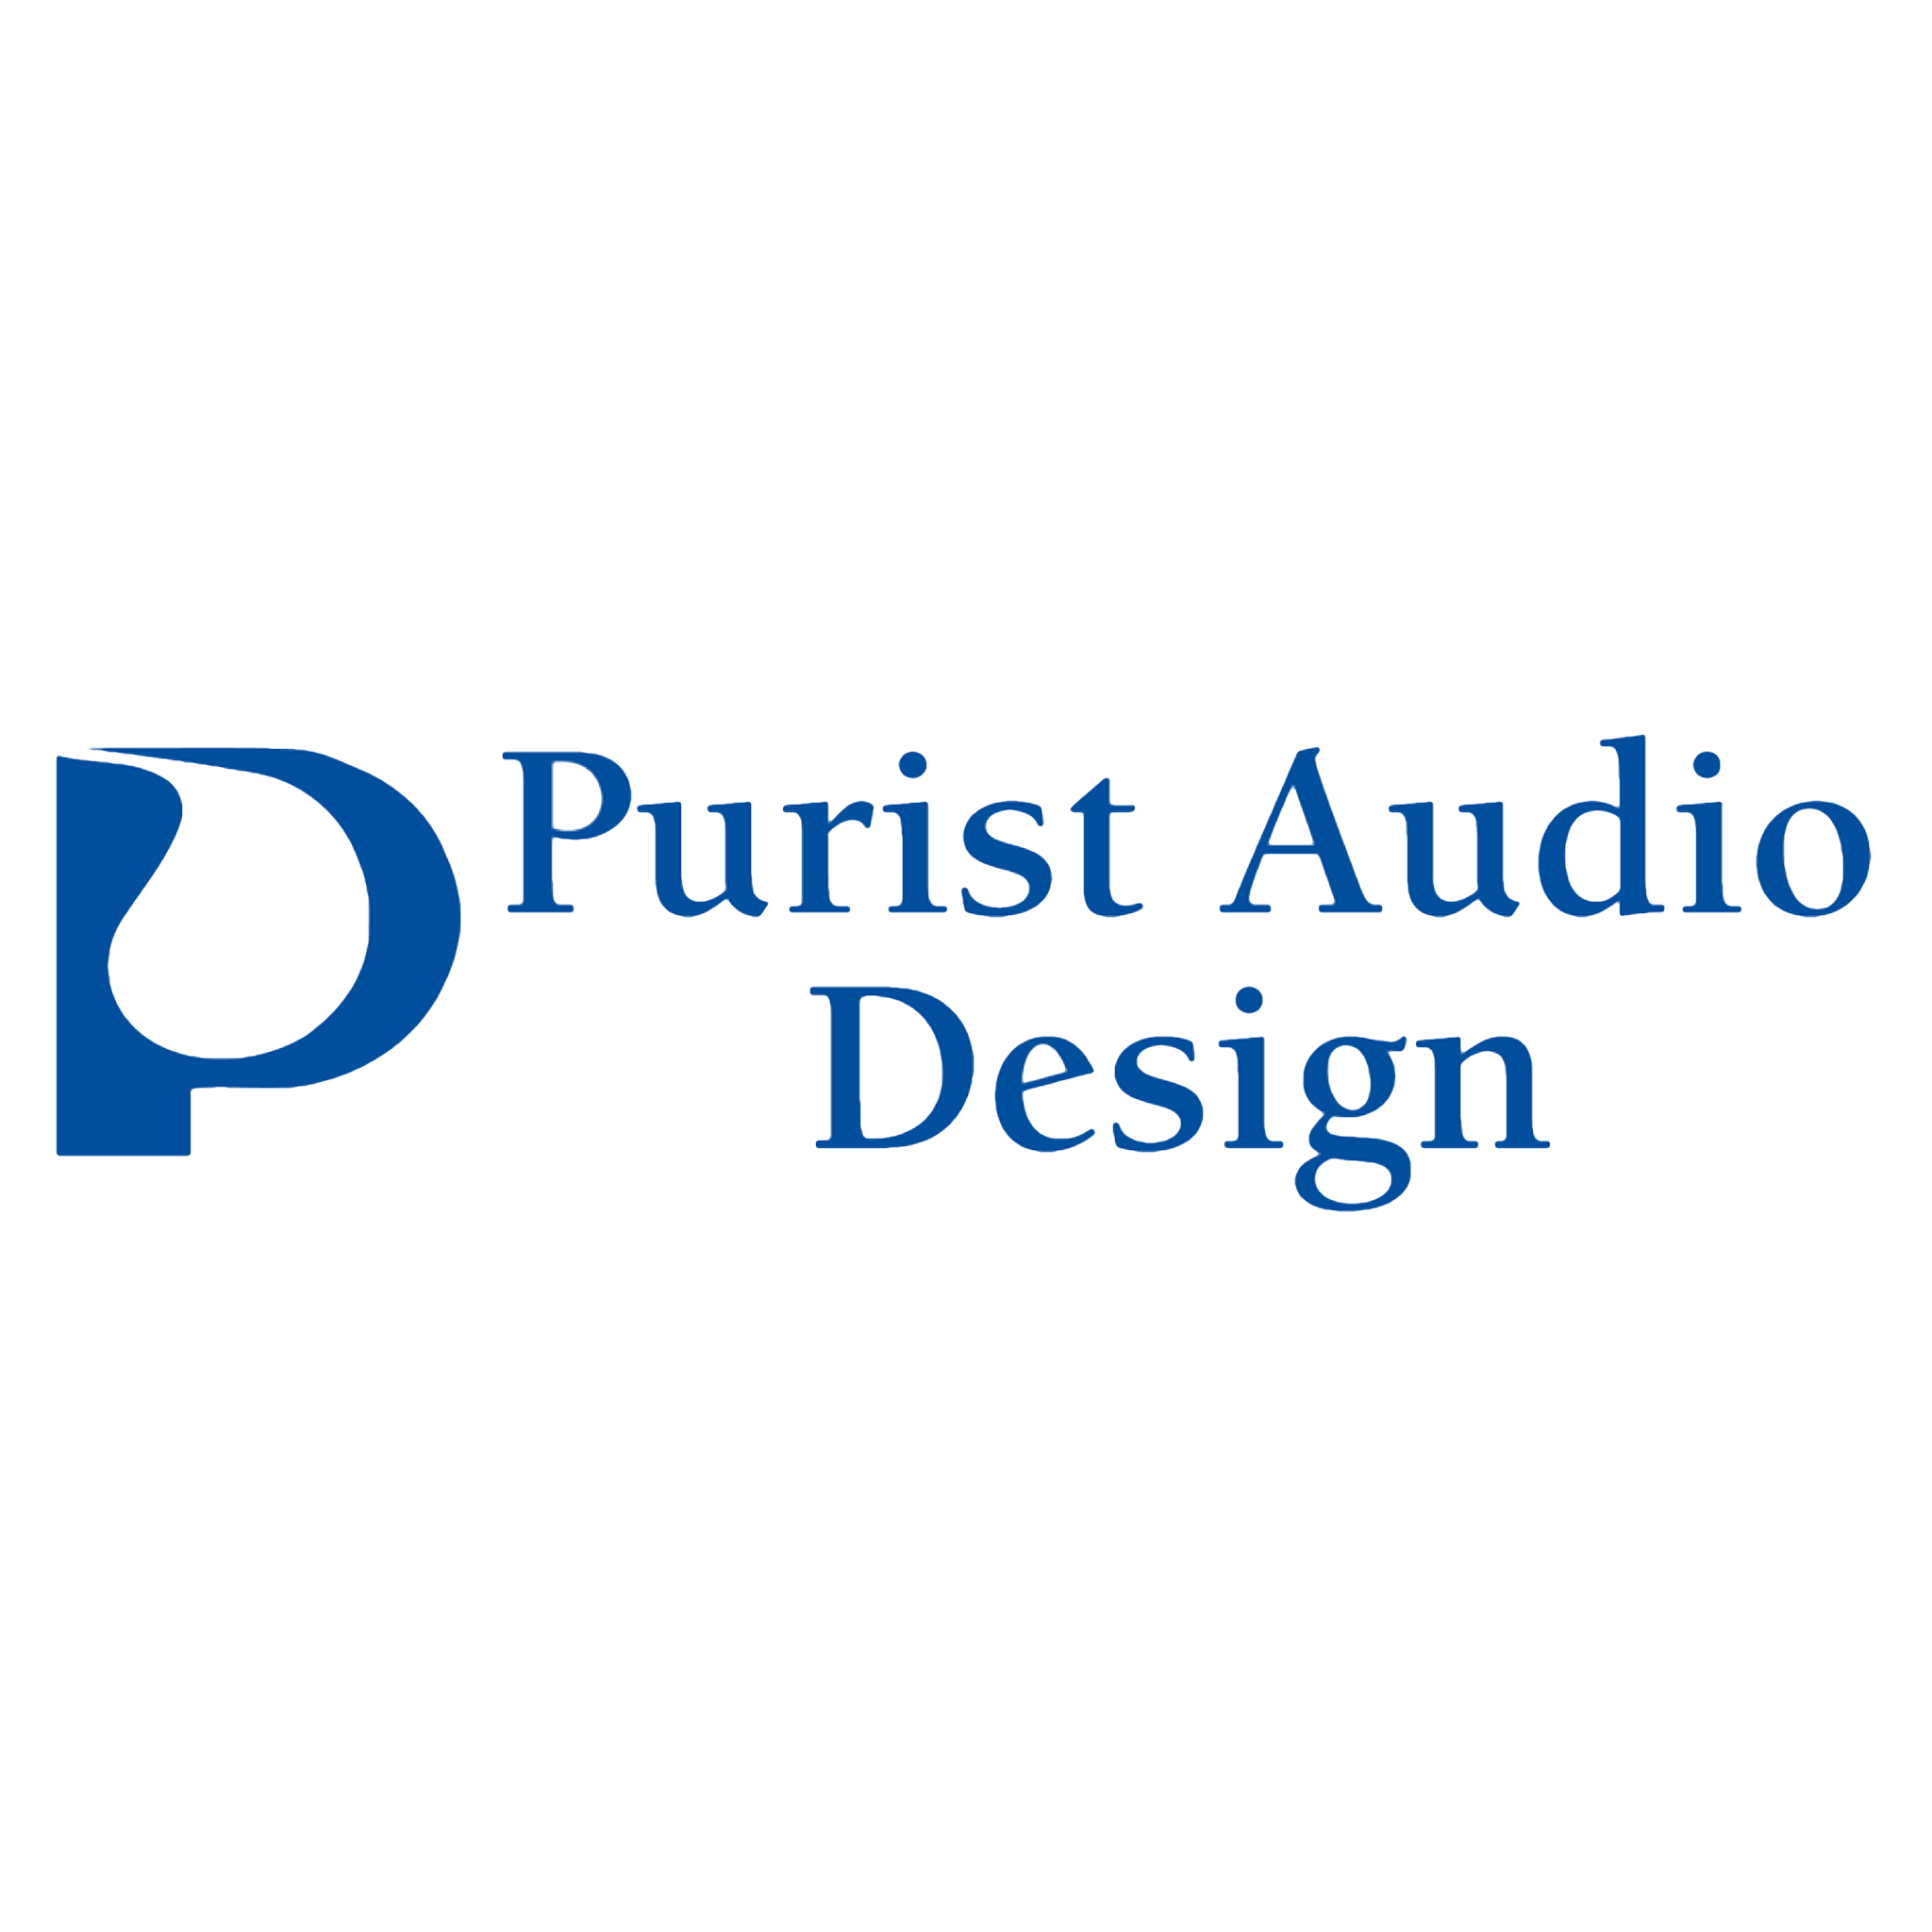 Purist audio design logo